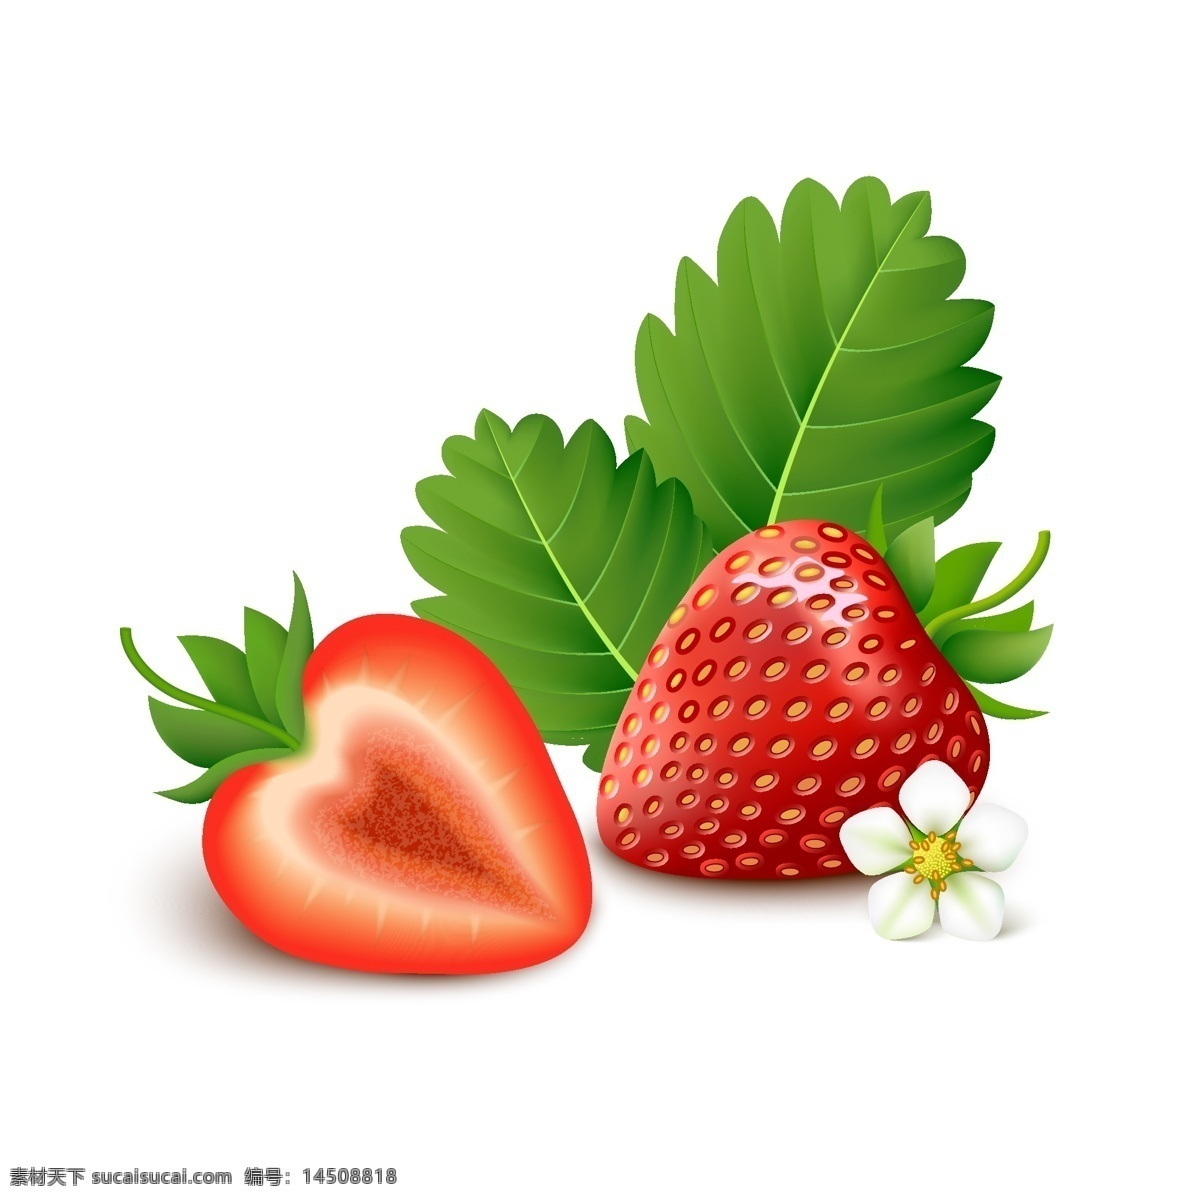 红红 诱人 水果 草莓 插画 新鲜 叶子 花朵